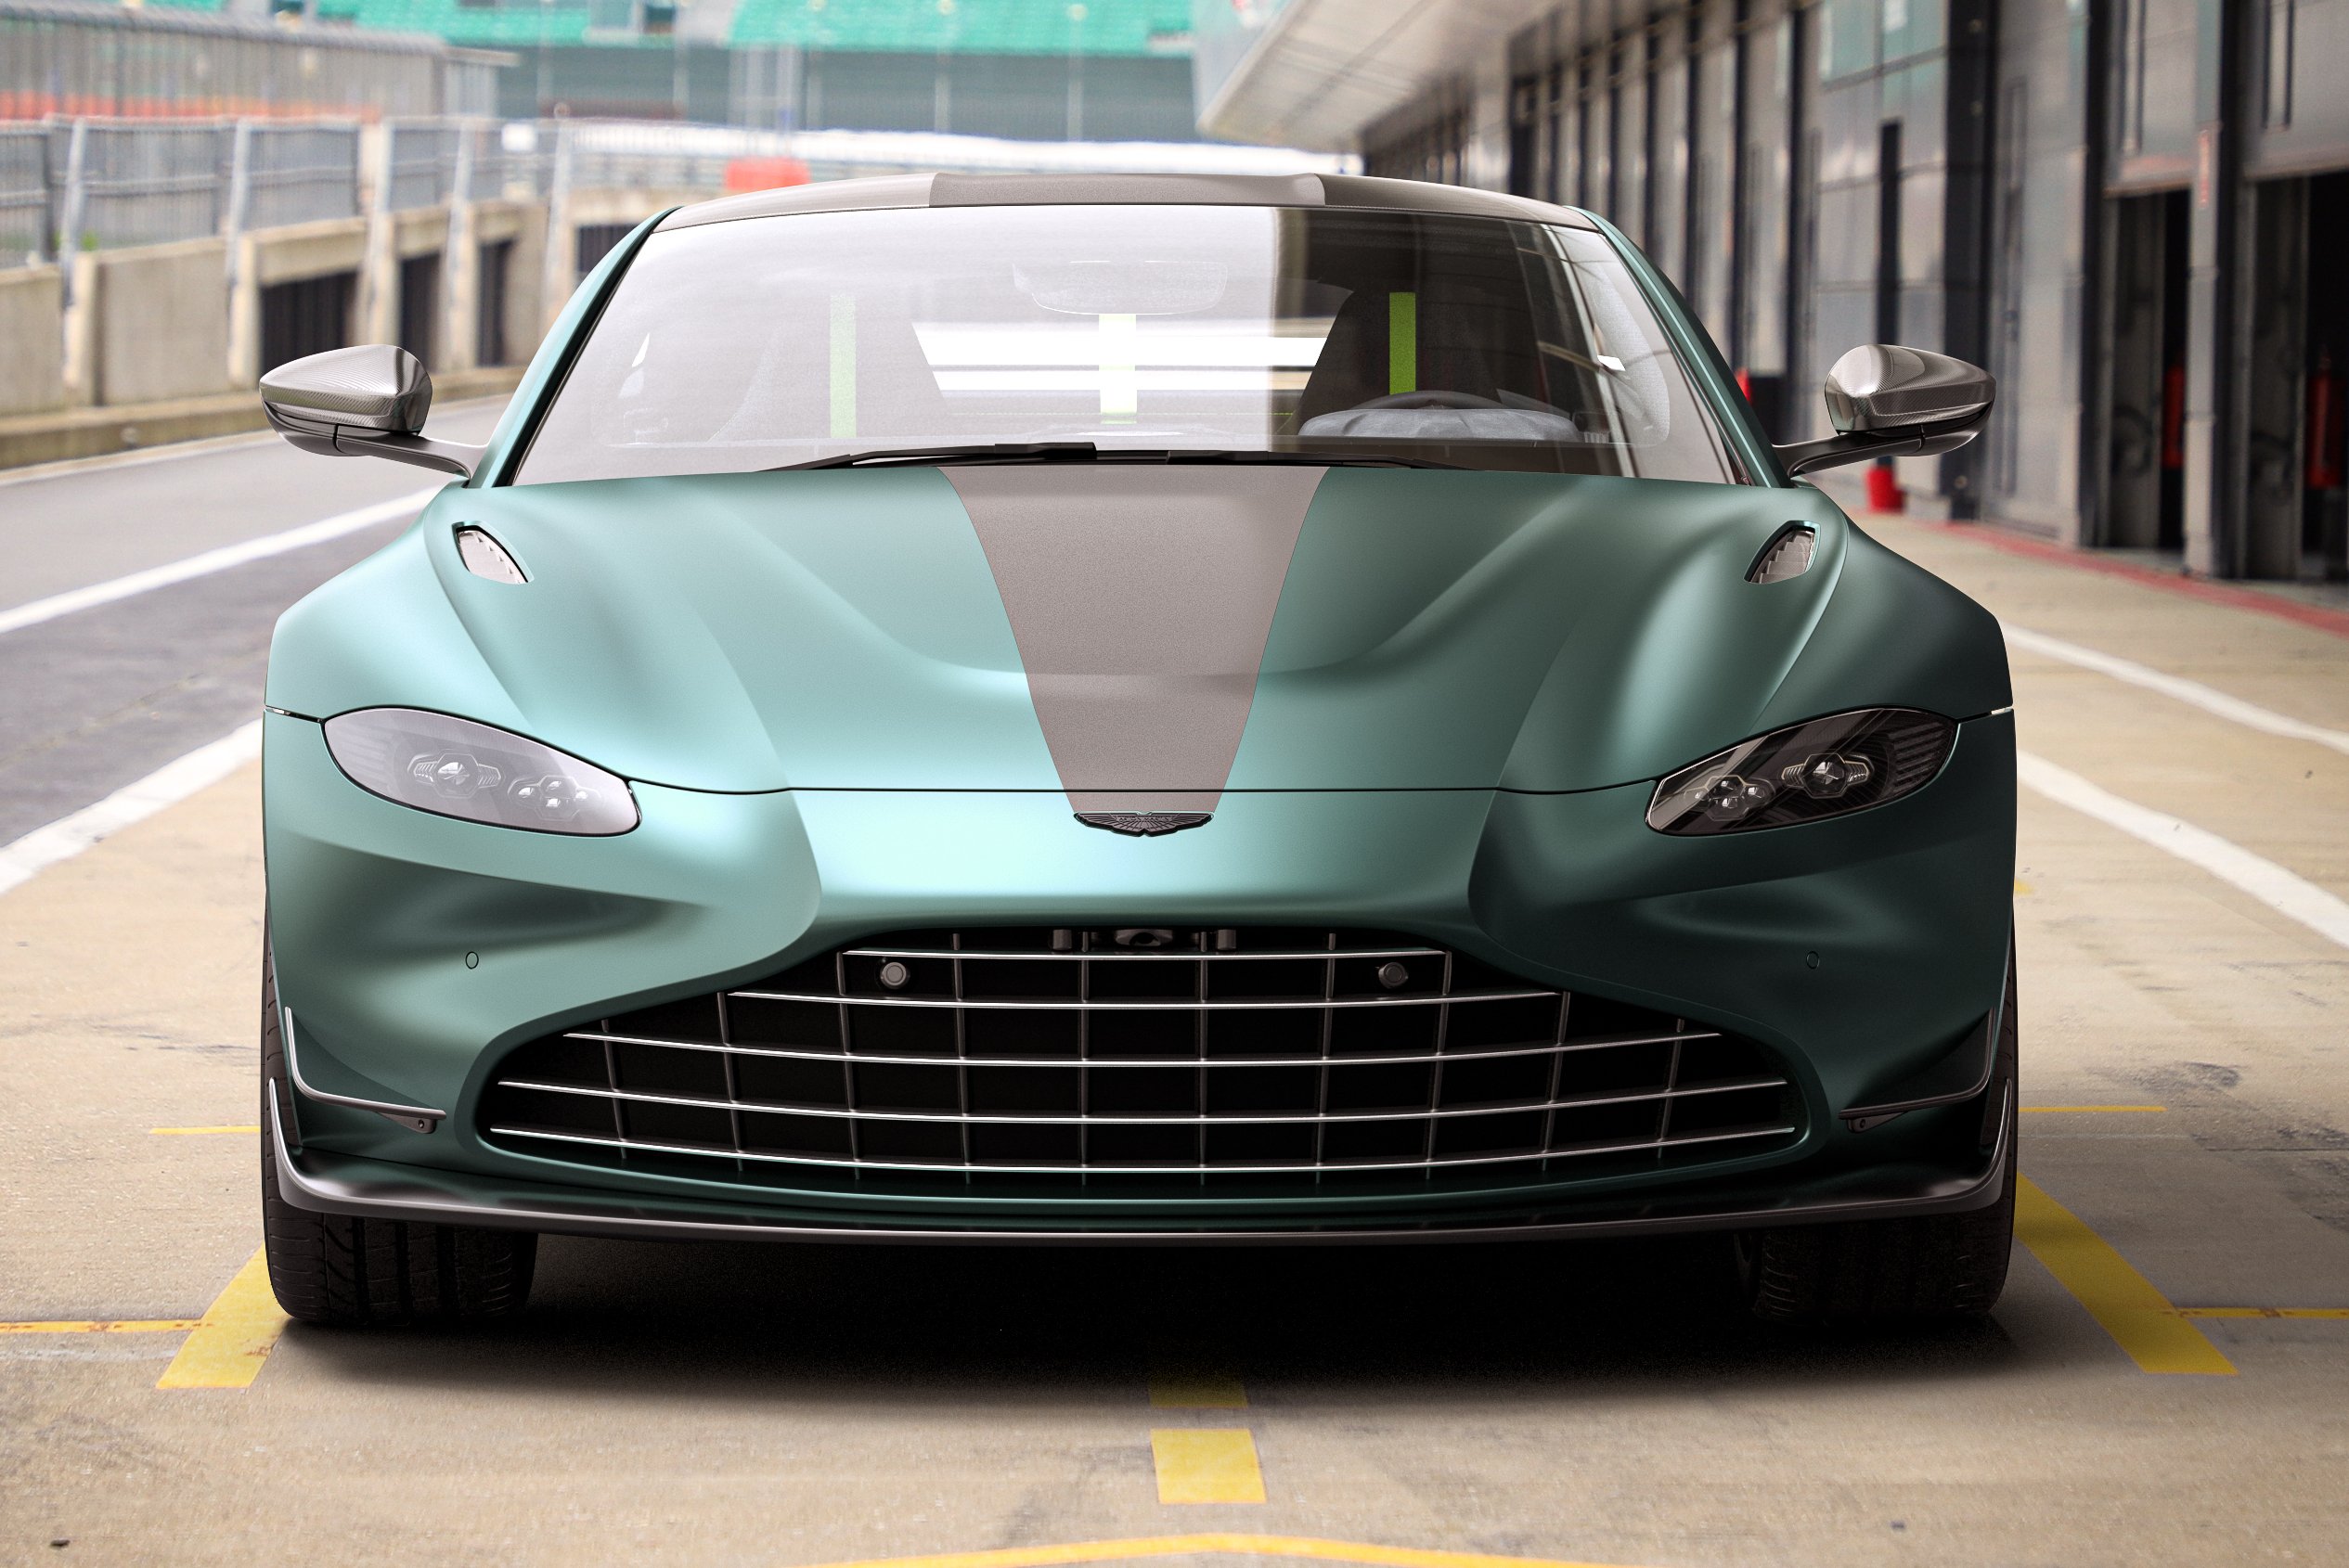 A Forma-1-ből jön az utcára ez az Aston Martin 5